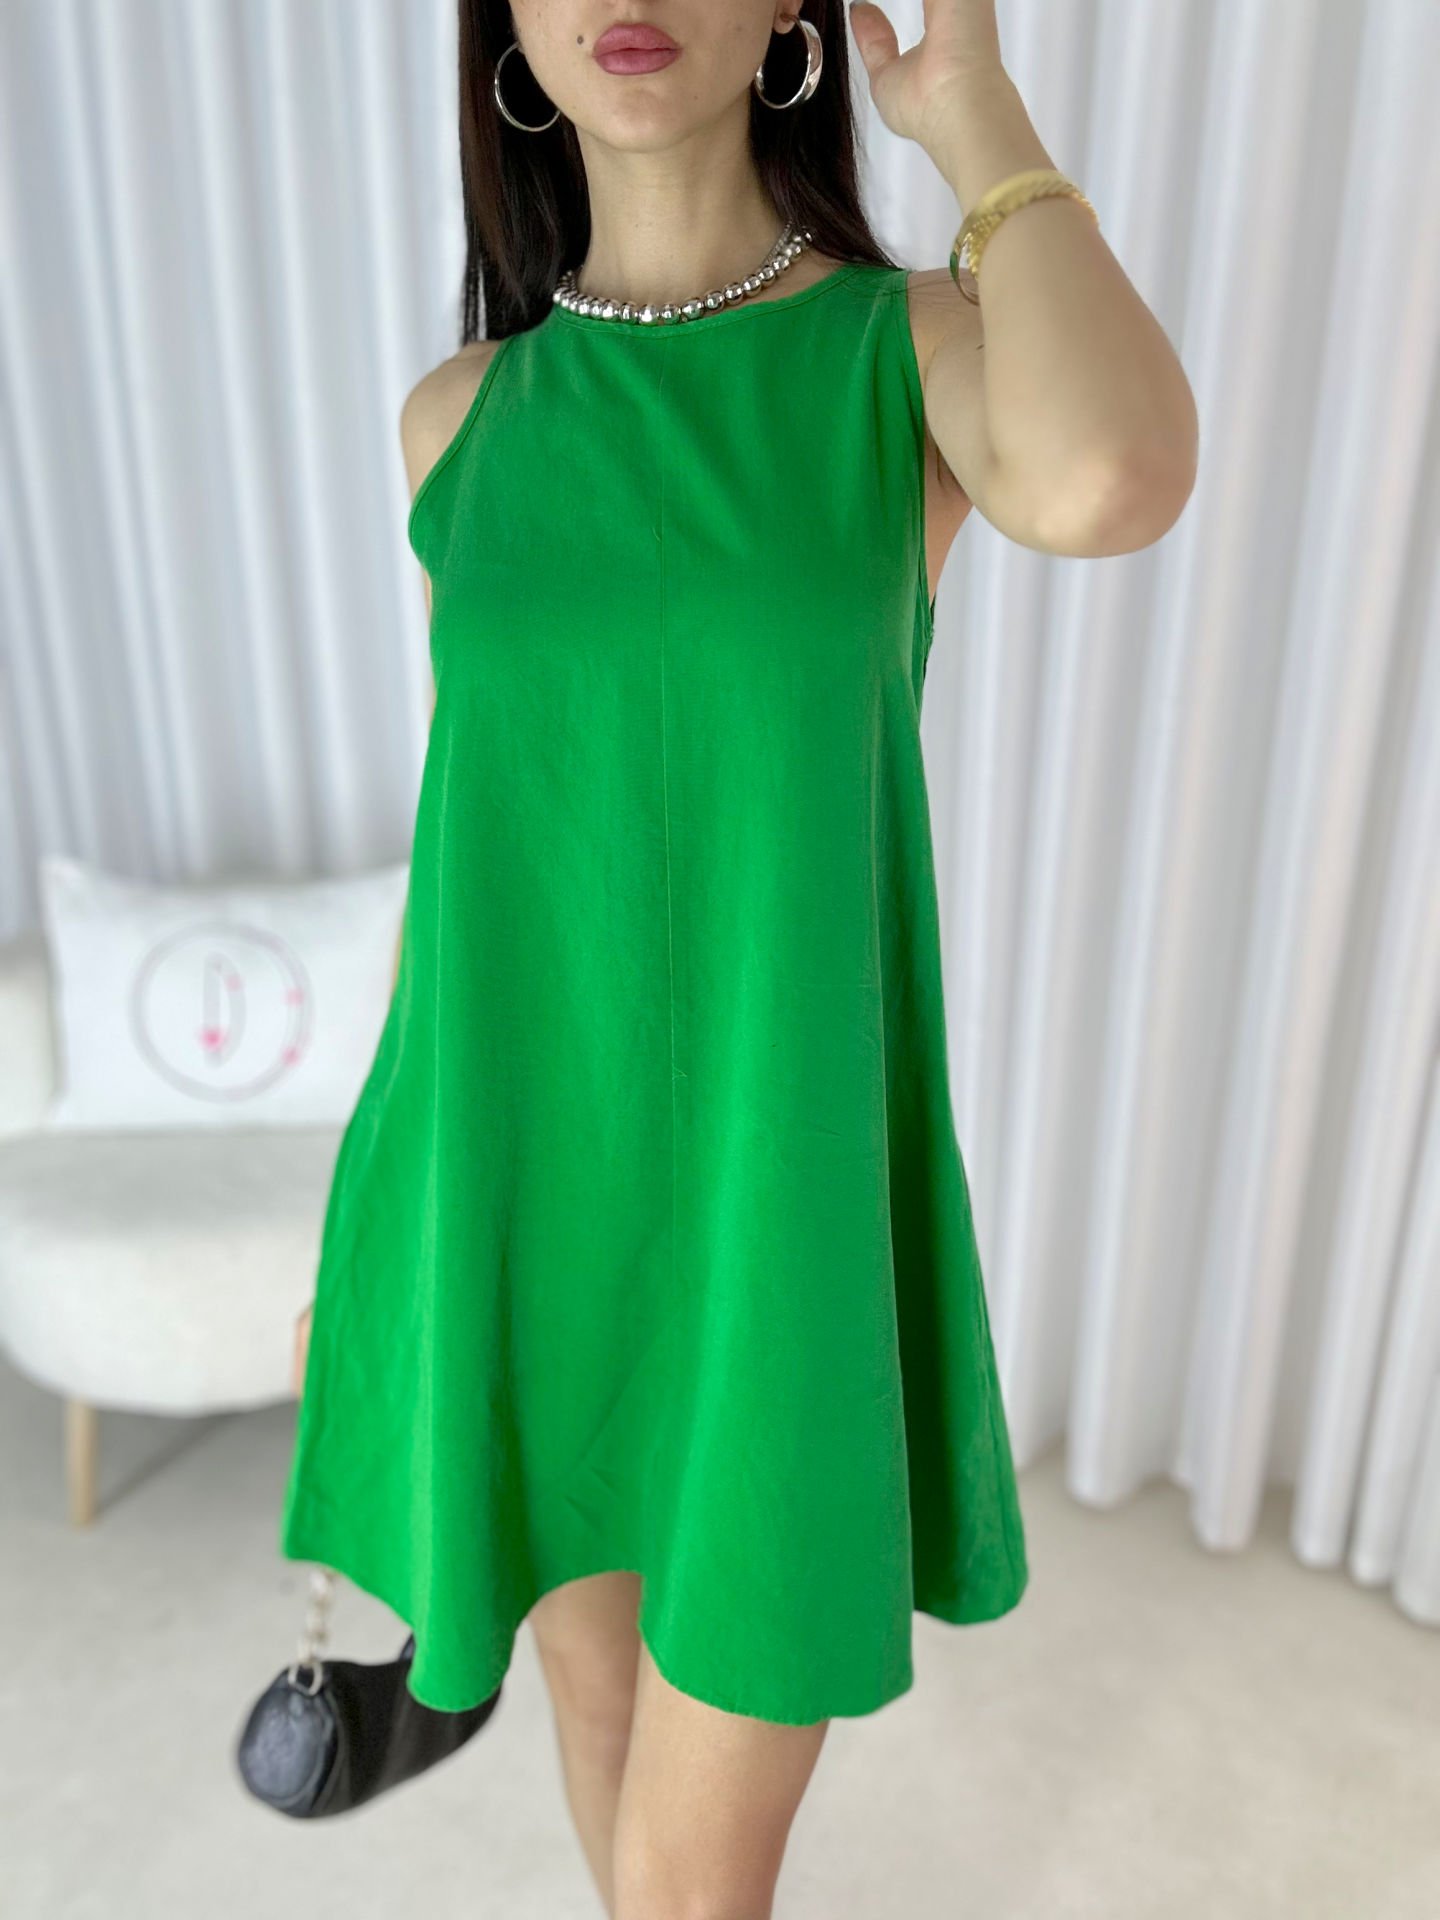 Kadın Dilvin Cep Detaylı Sıfır Kol Elbise Yeşil